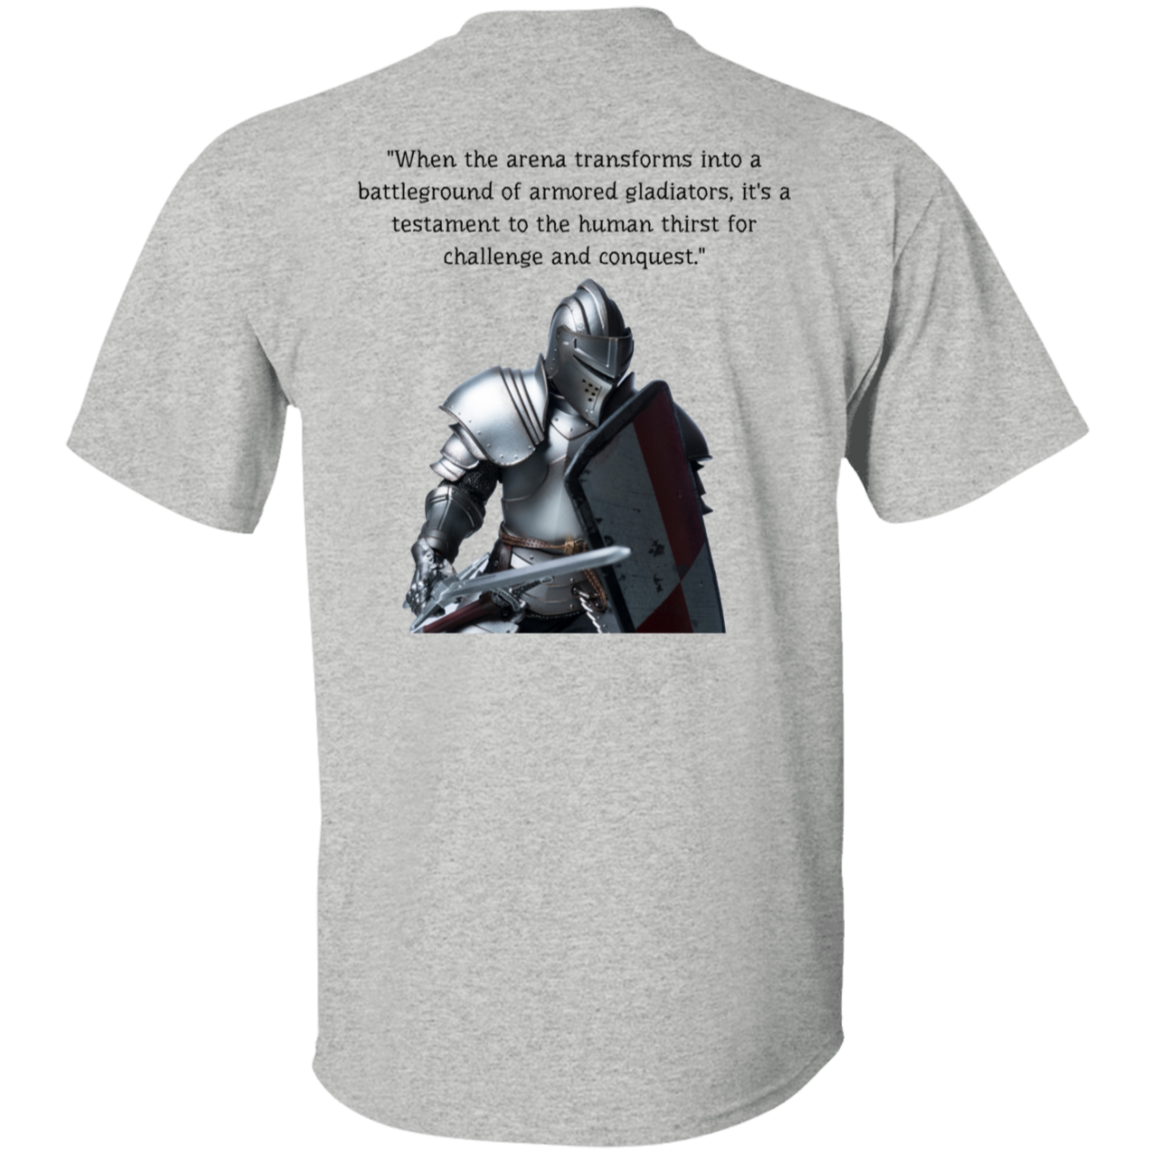 Armour Combat Men's T-Shirt